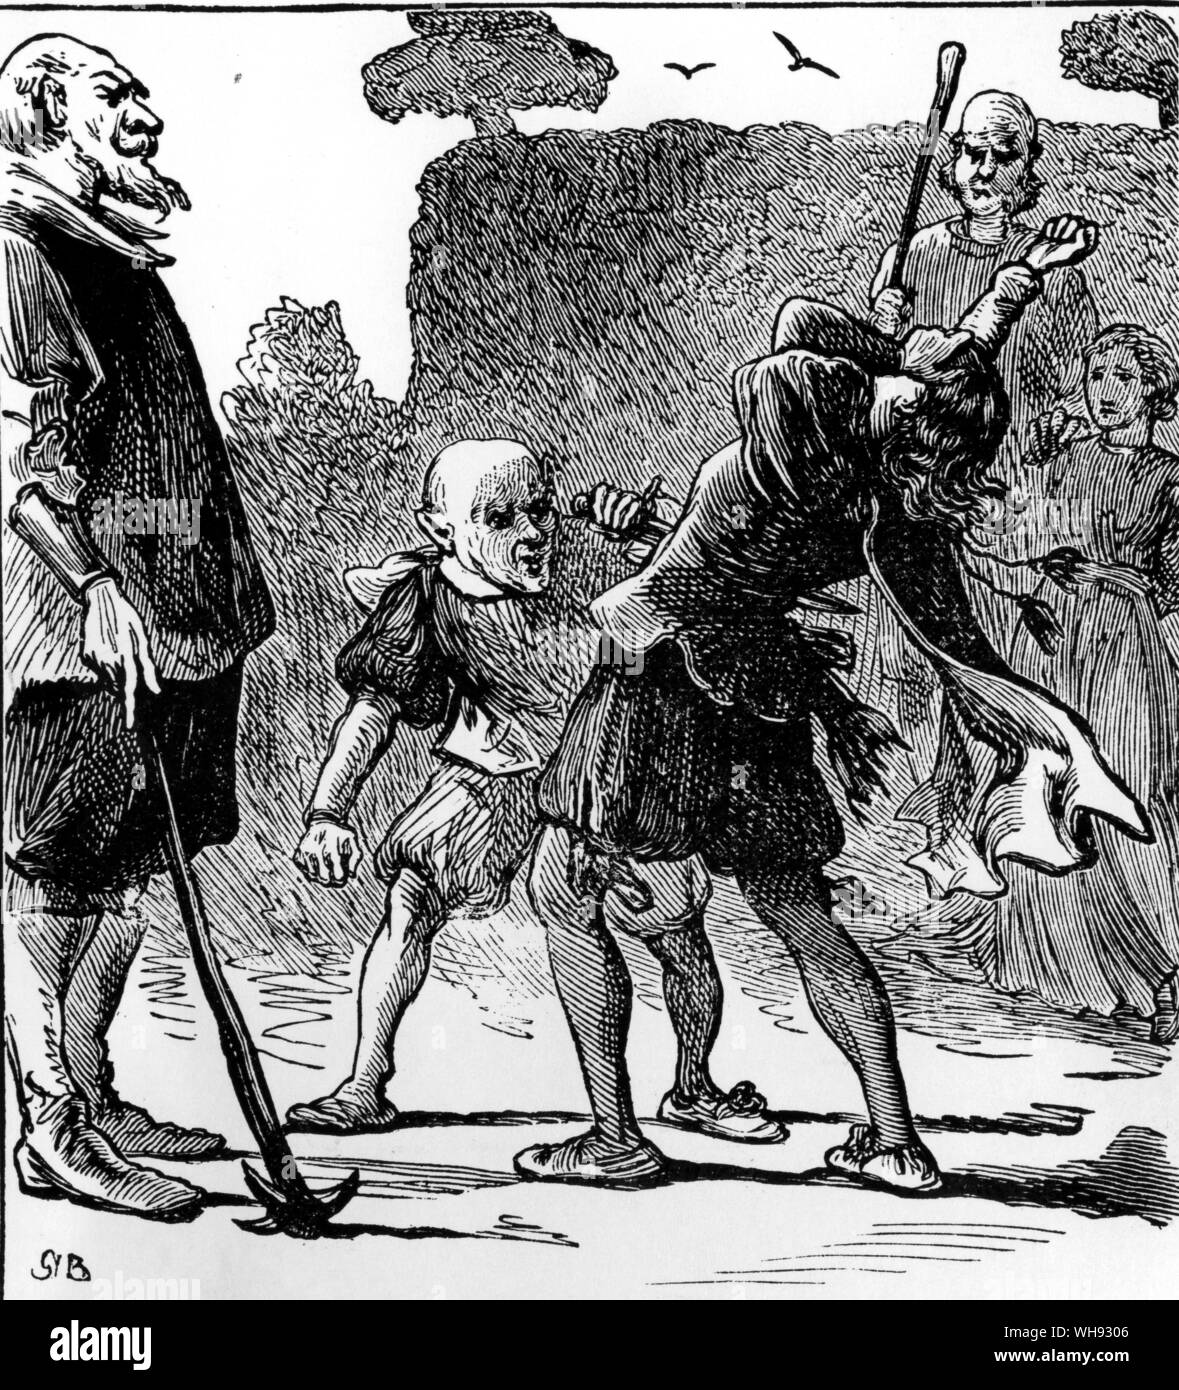 Le nain jaune représenté par Gordon Browne en 1887. L'illustration du bas montre la triste fin de la version originale de l'histoire lorsque le nain tue le roi des mines d'or. Banque D'Images